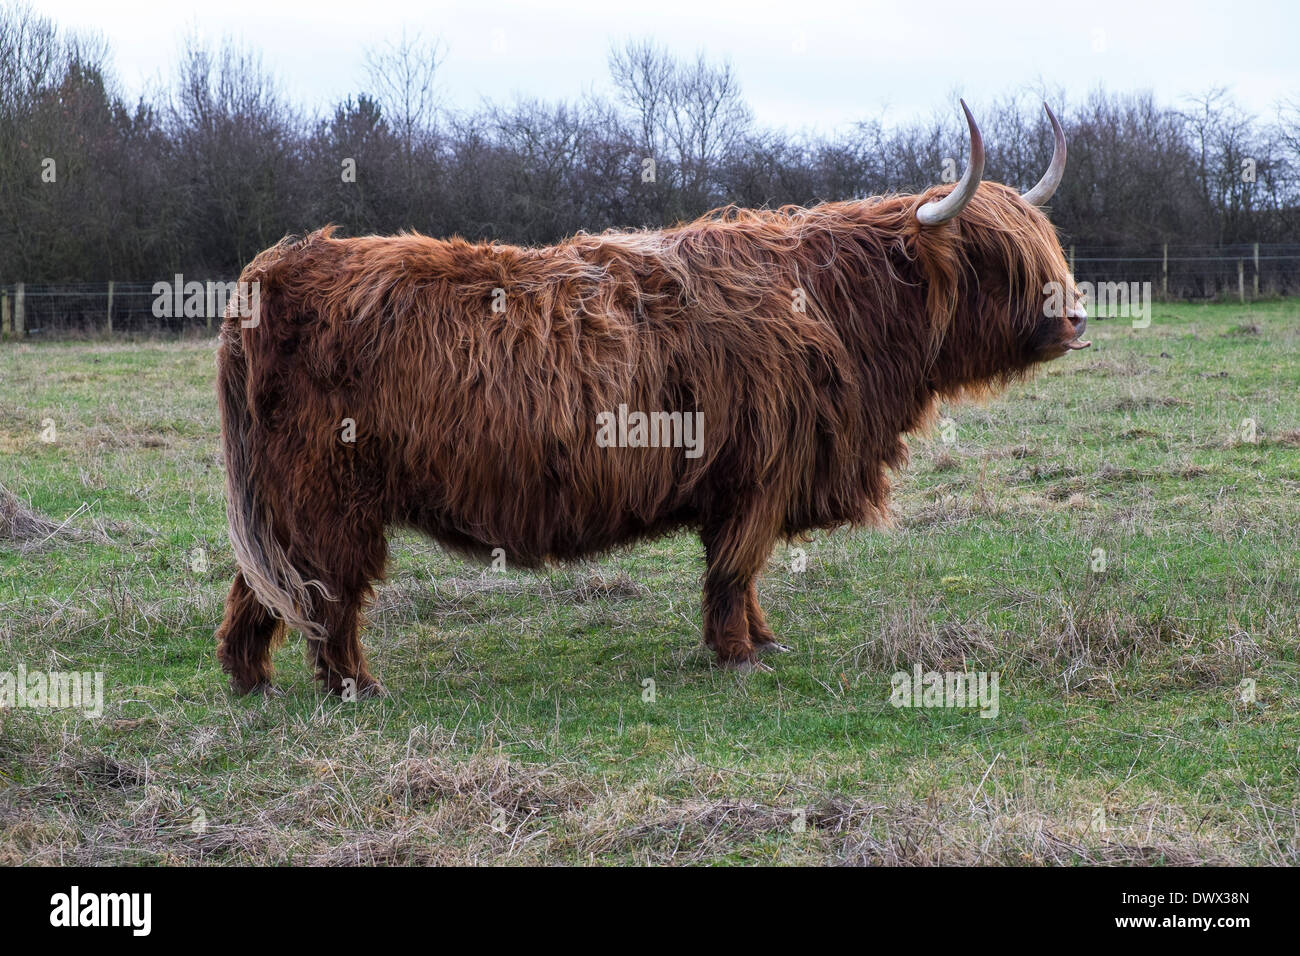 scottish highland cattle Stock Photo